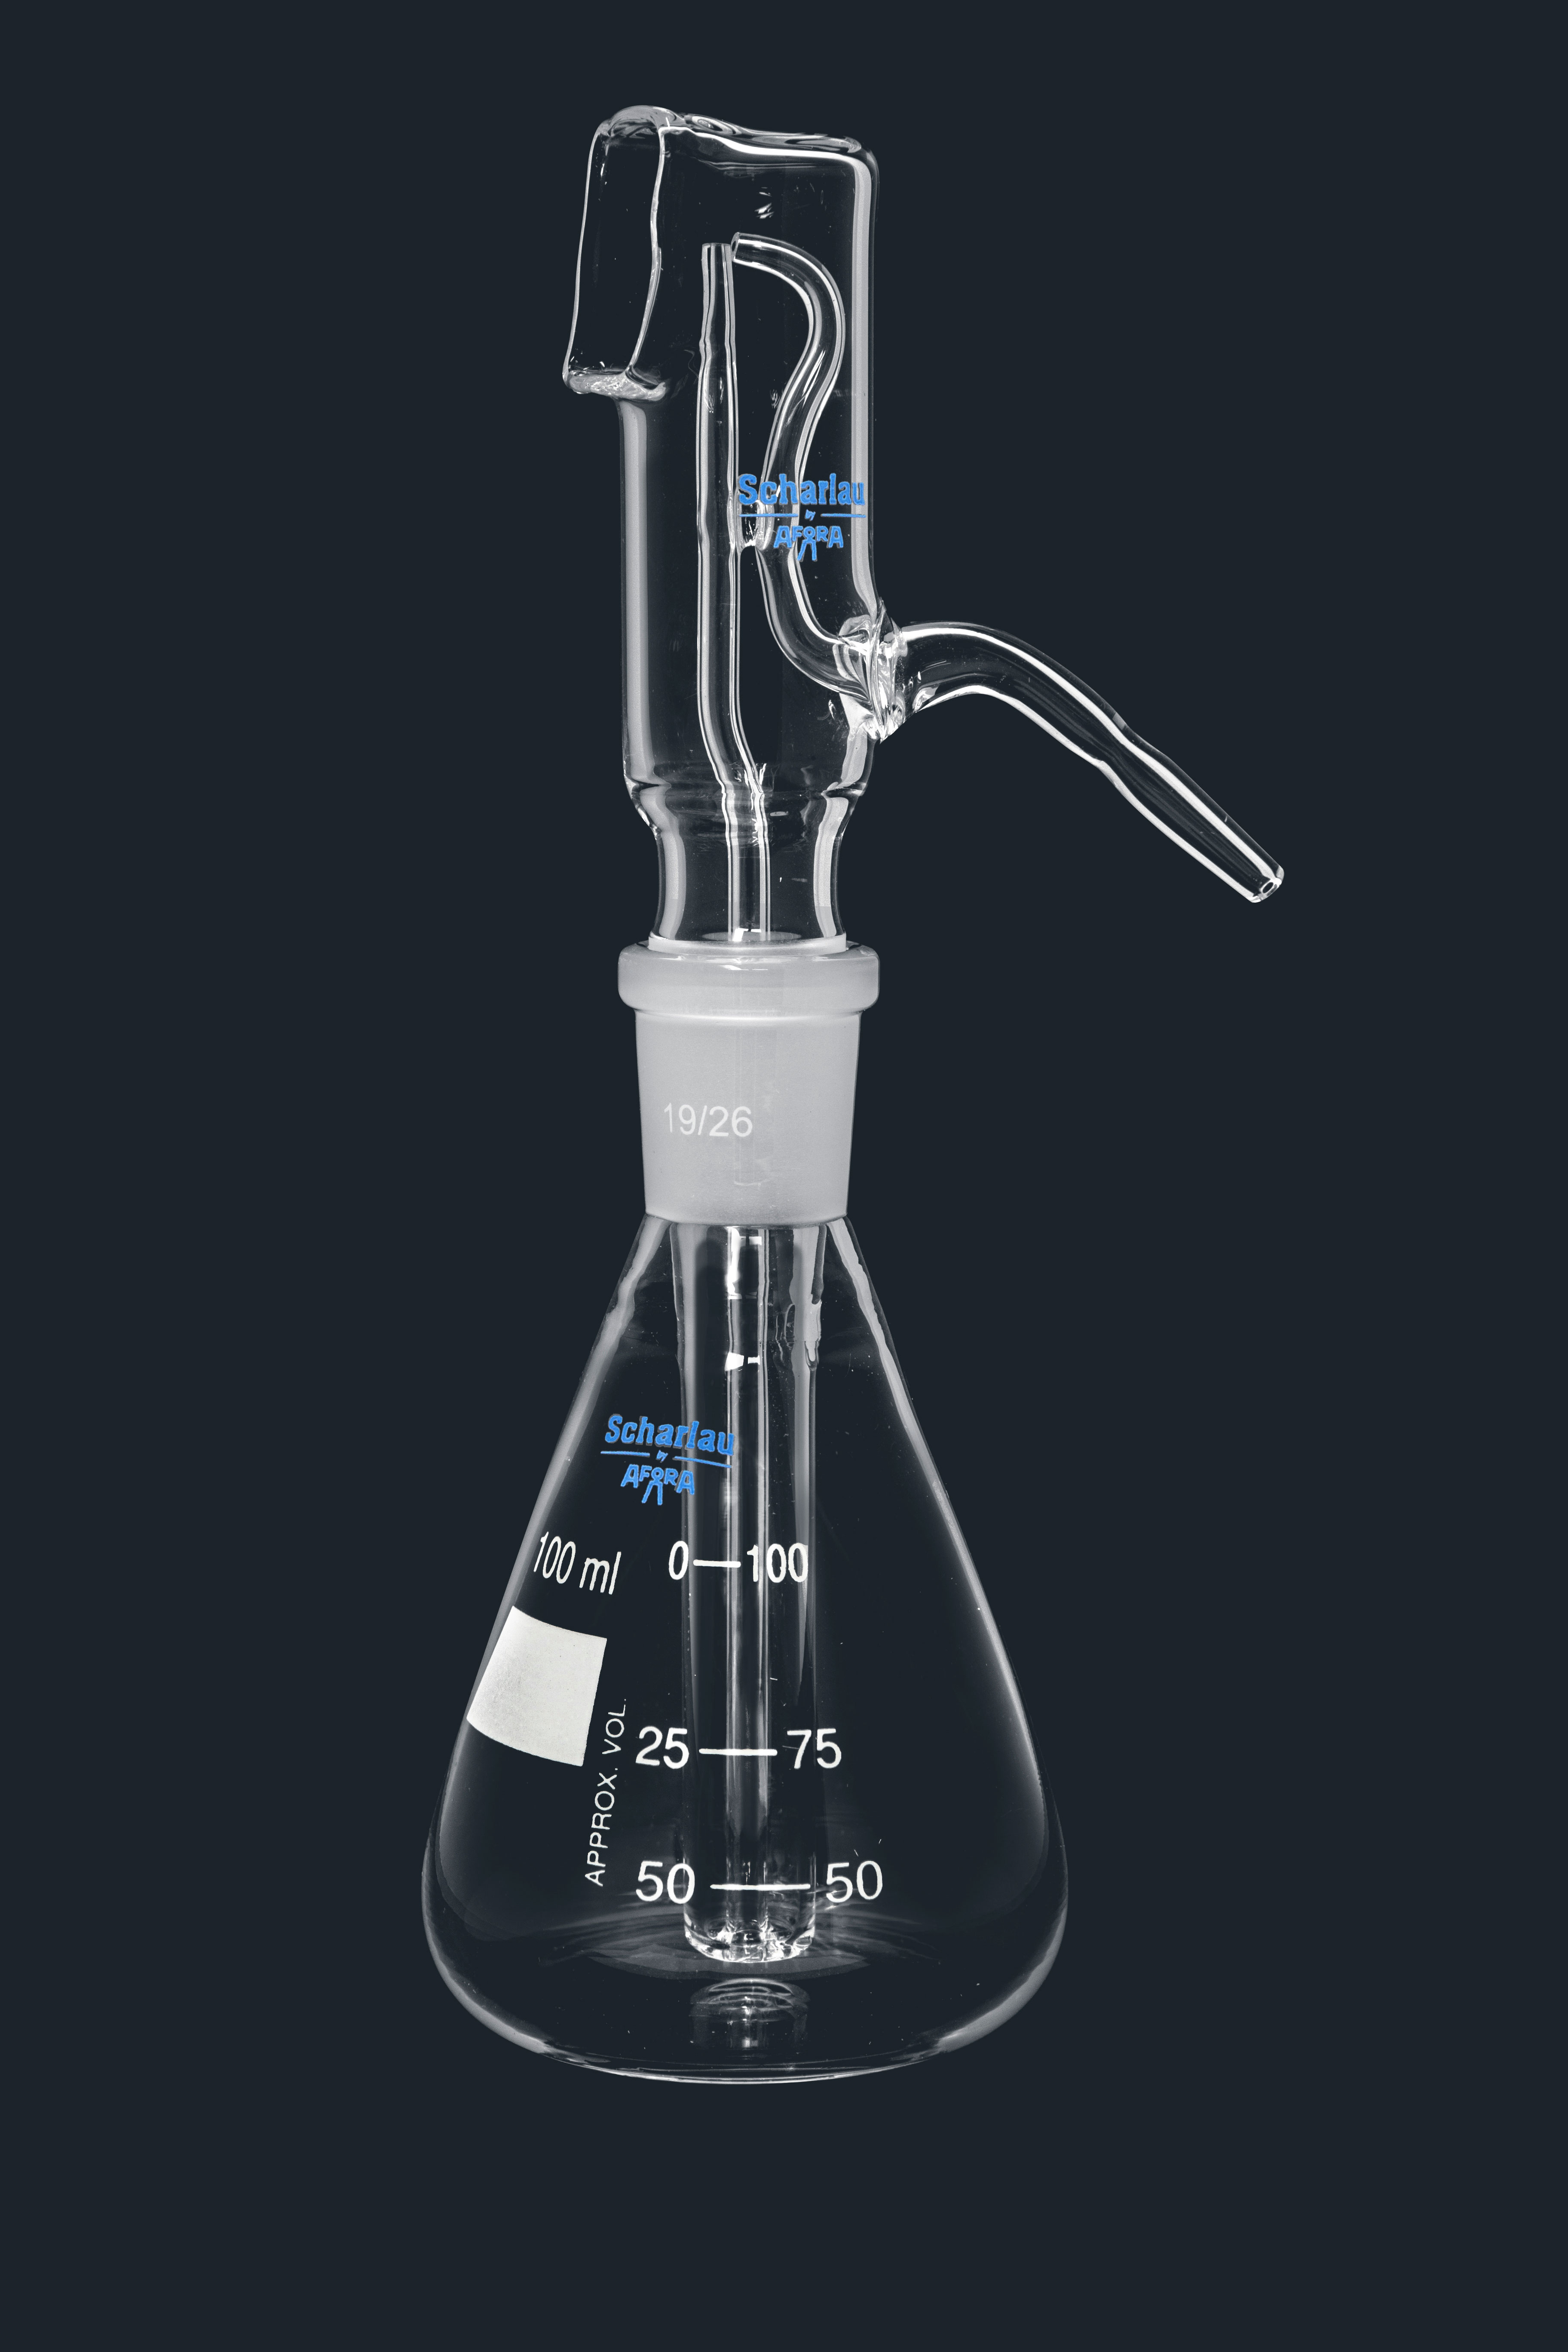 Pulverizador  de vidrio de 100 ml.esmerilados 19/26 Completo compuesto de Cabeza pulverizadora ref. 073-001366 y matraz erlermewyer de 100 ml. ref. 073-000137 Scharlau